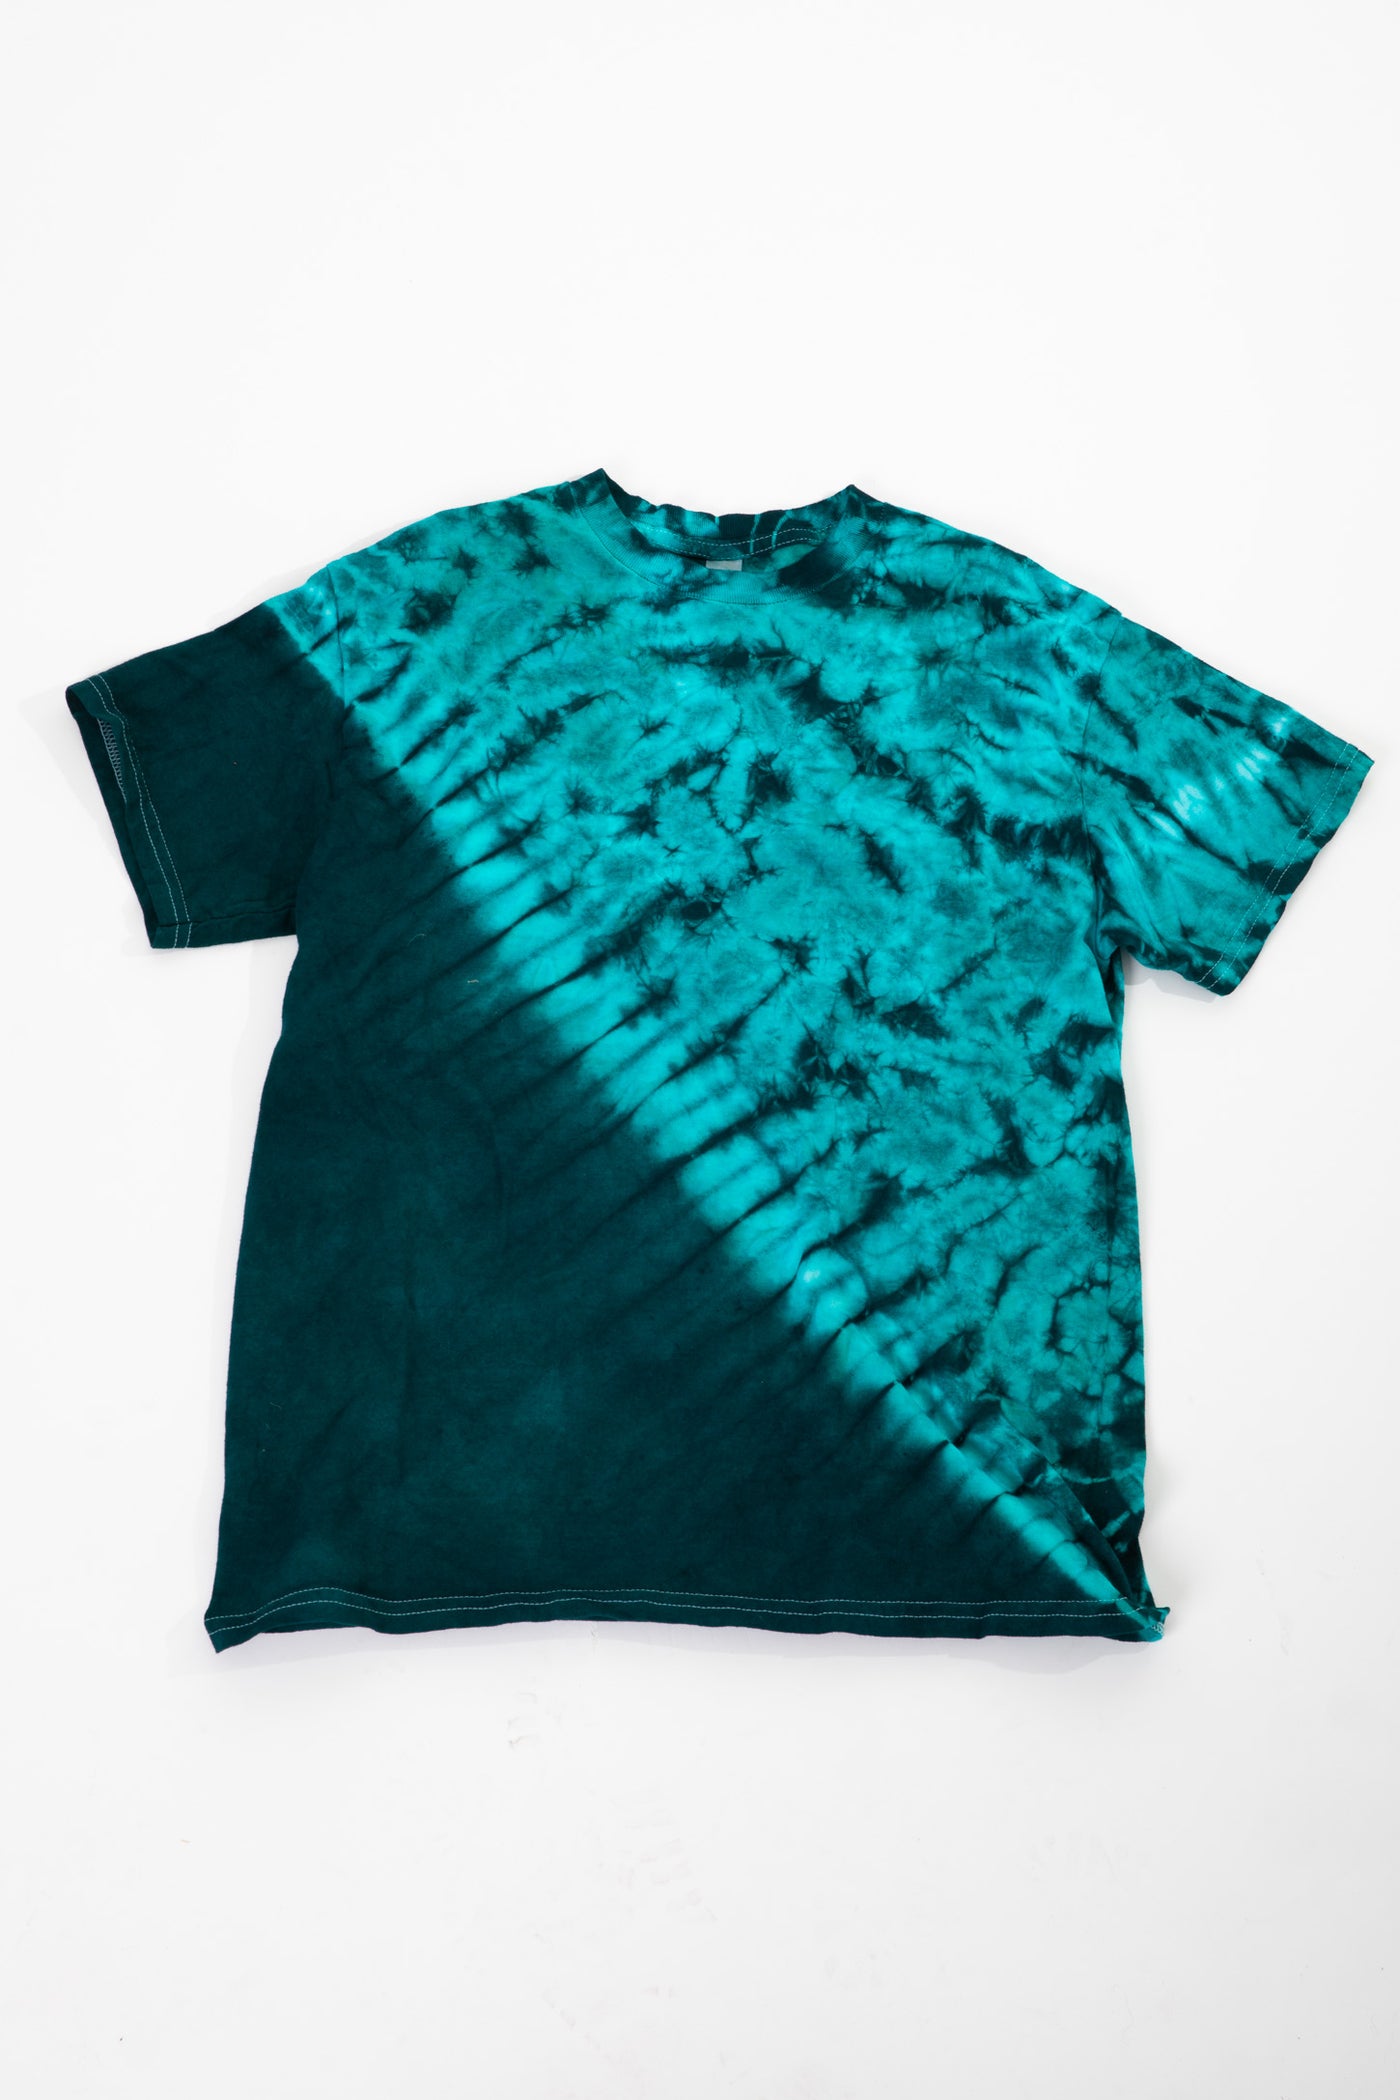 Psychedelic Diagonal Tie Dye T-Shirt